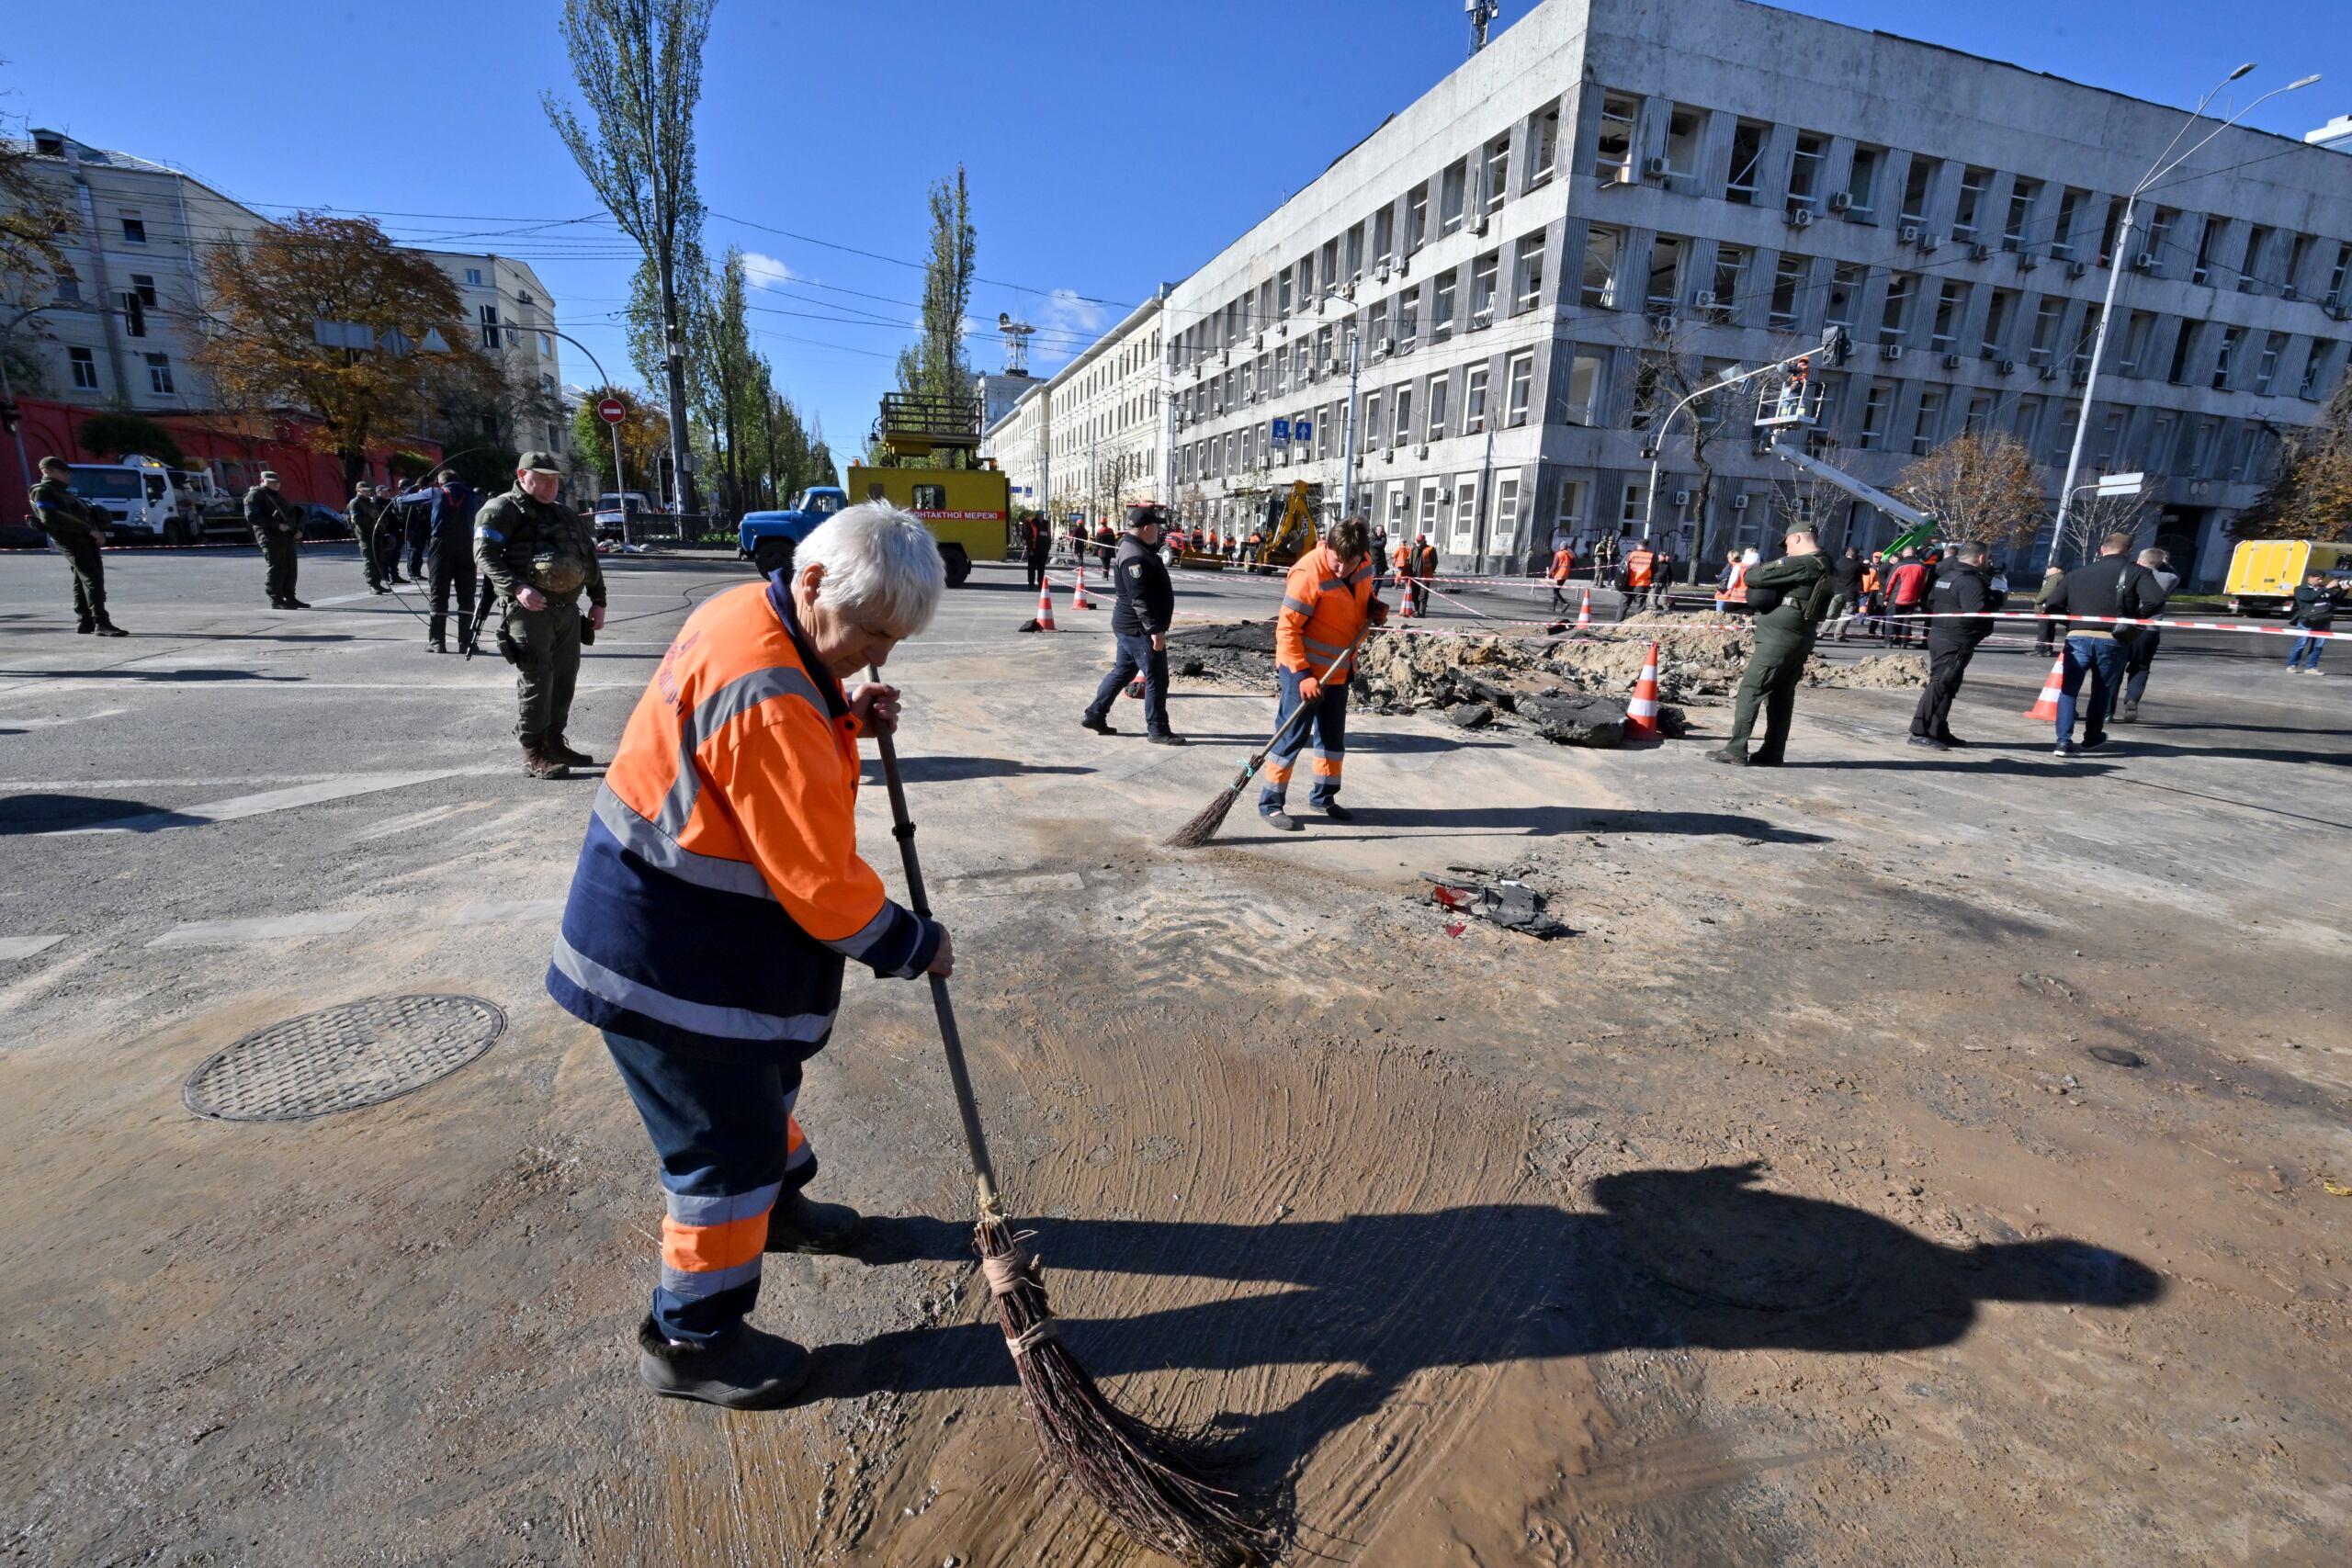 Ludzie sprzątają ulicę miotłami